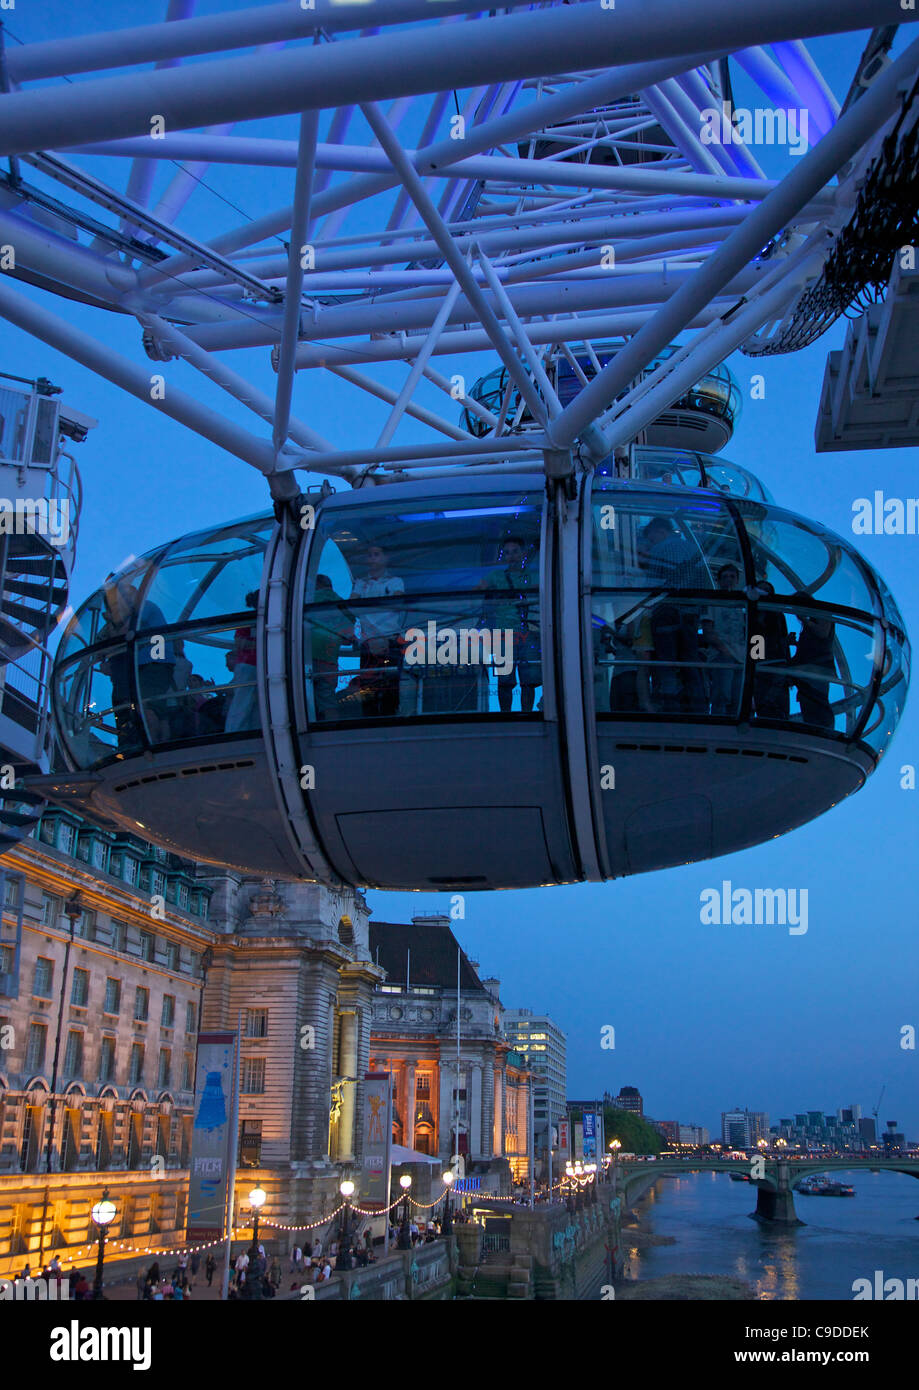 Avis de voyageurs de pod capsule de la London Eye au crépuscule, South Bank, Londres, Angleterre, Royaume-Uni, Royaume-Uni, GO, Grande-Bretagne, B Banque D'Images